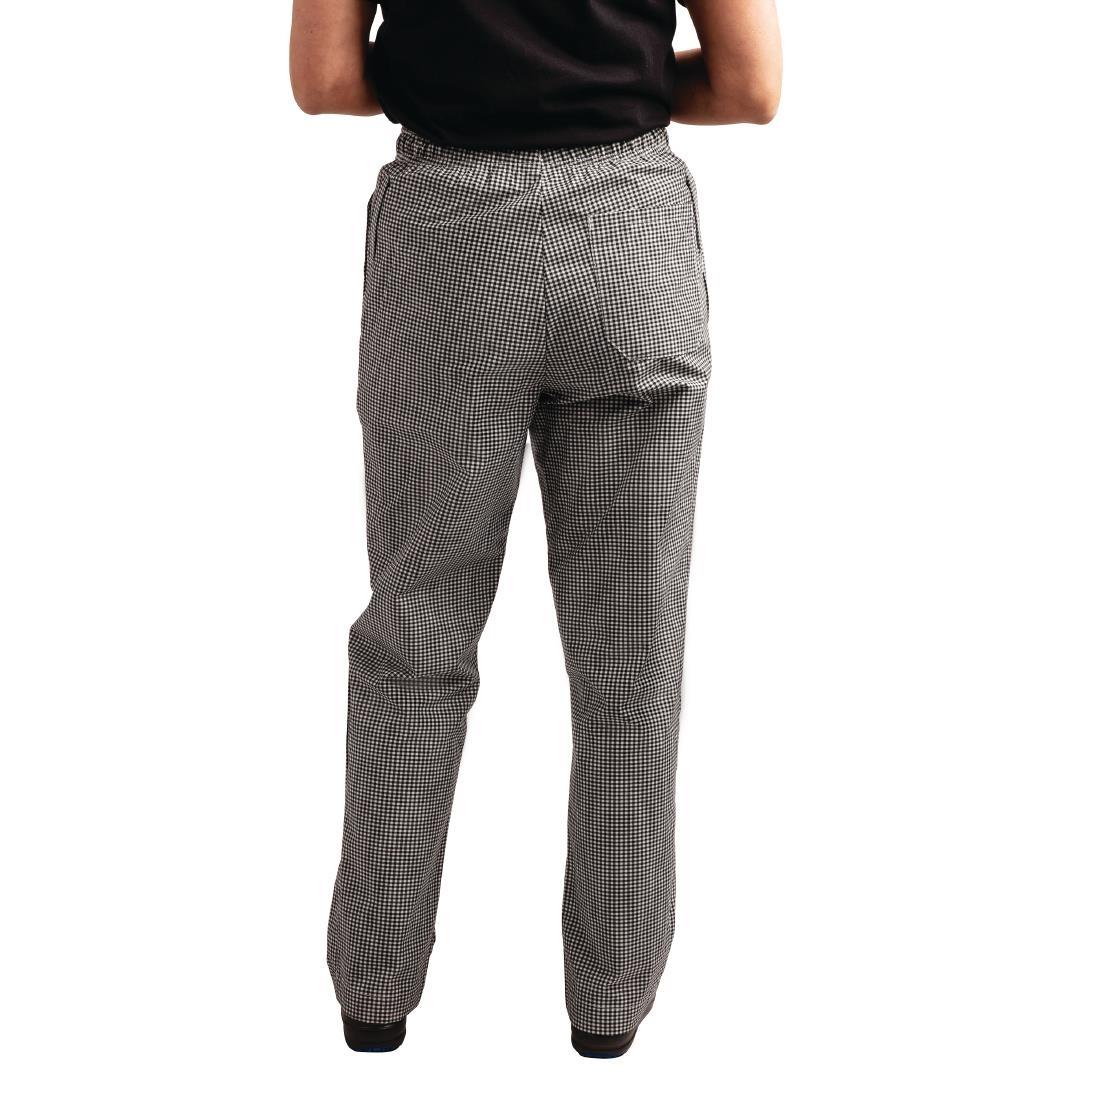 Whites Easyfit Trousers Teflon Black Check XL - A026T-XL  - 2